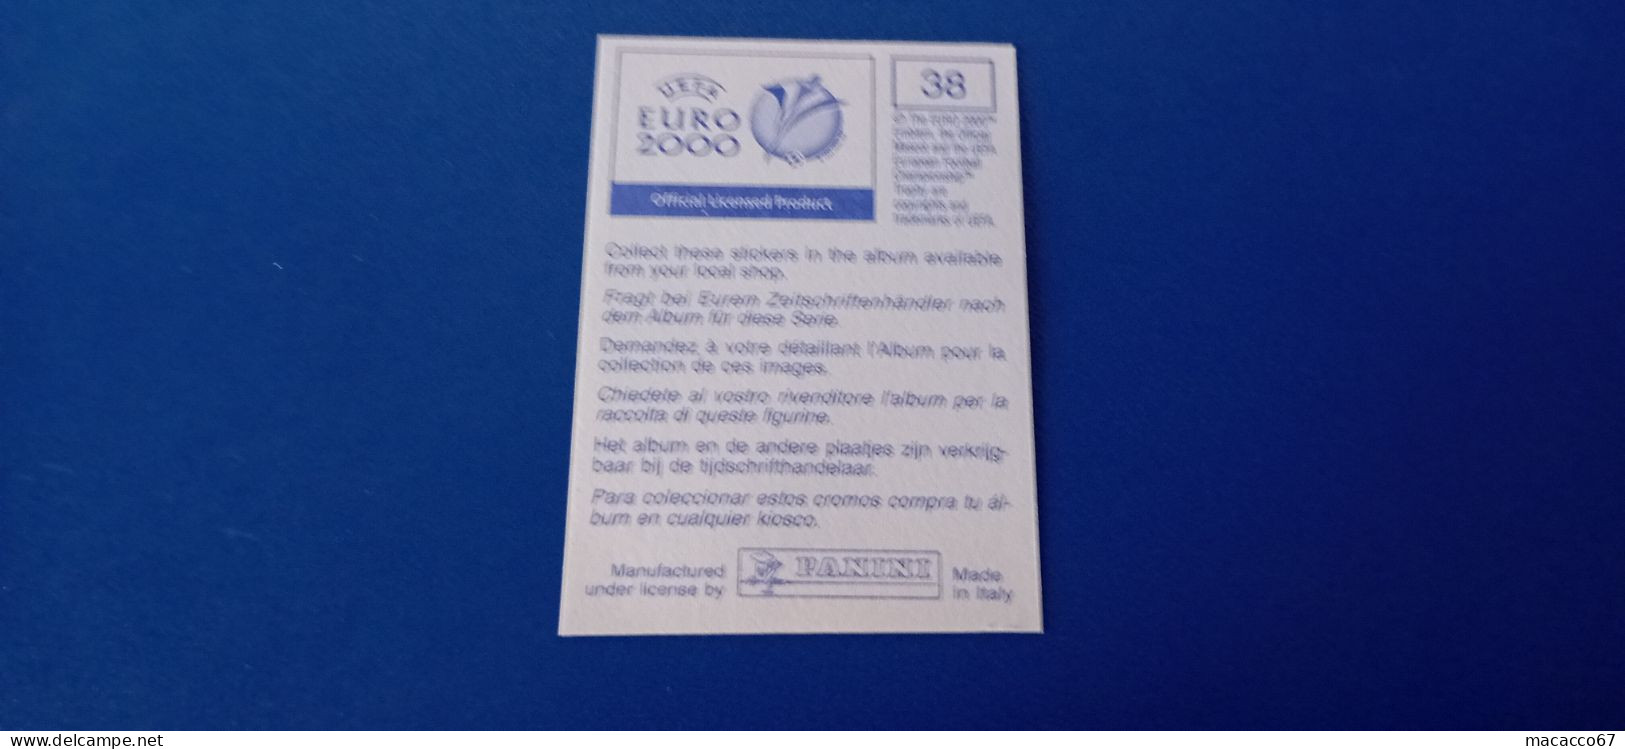 Figurina Panini Euro 2000 - 038 Petre Romania - Italian Edition